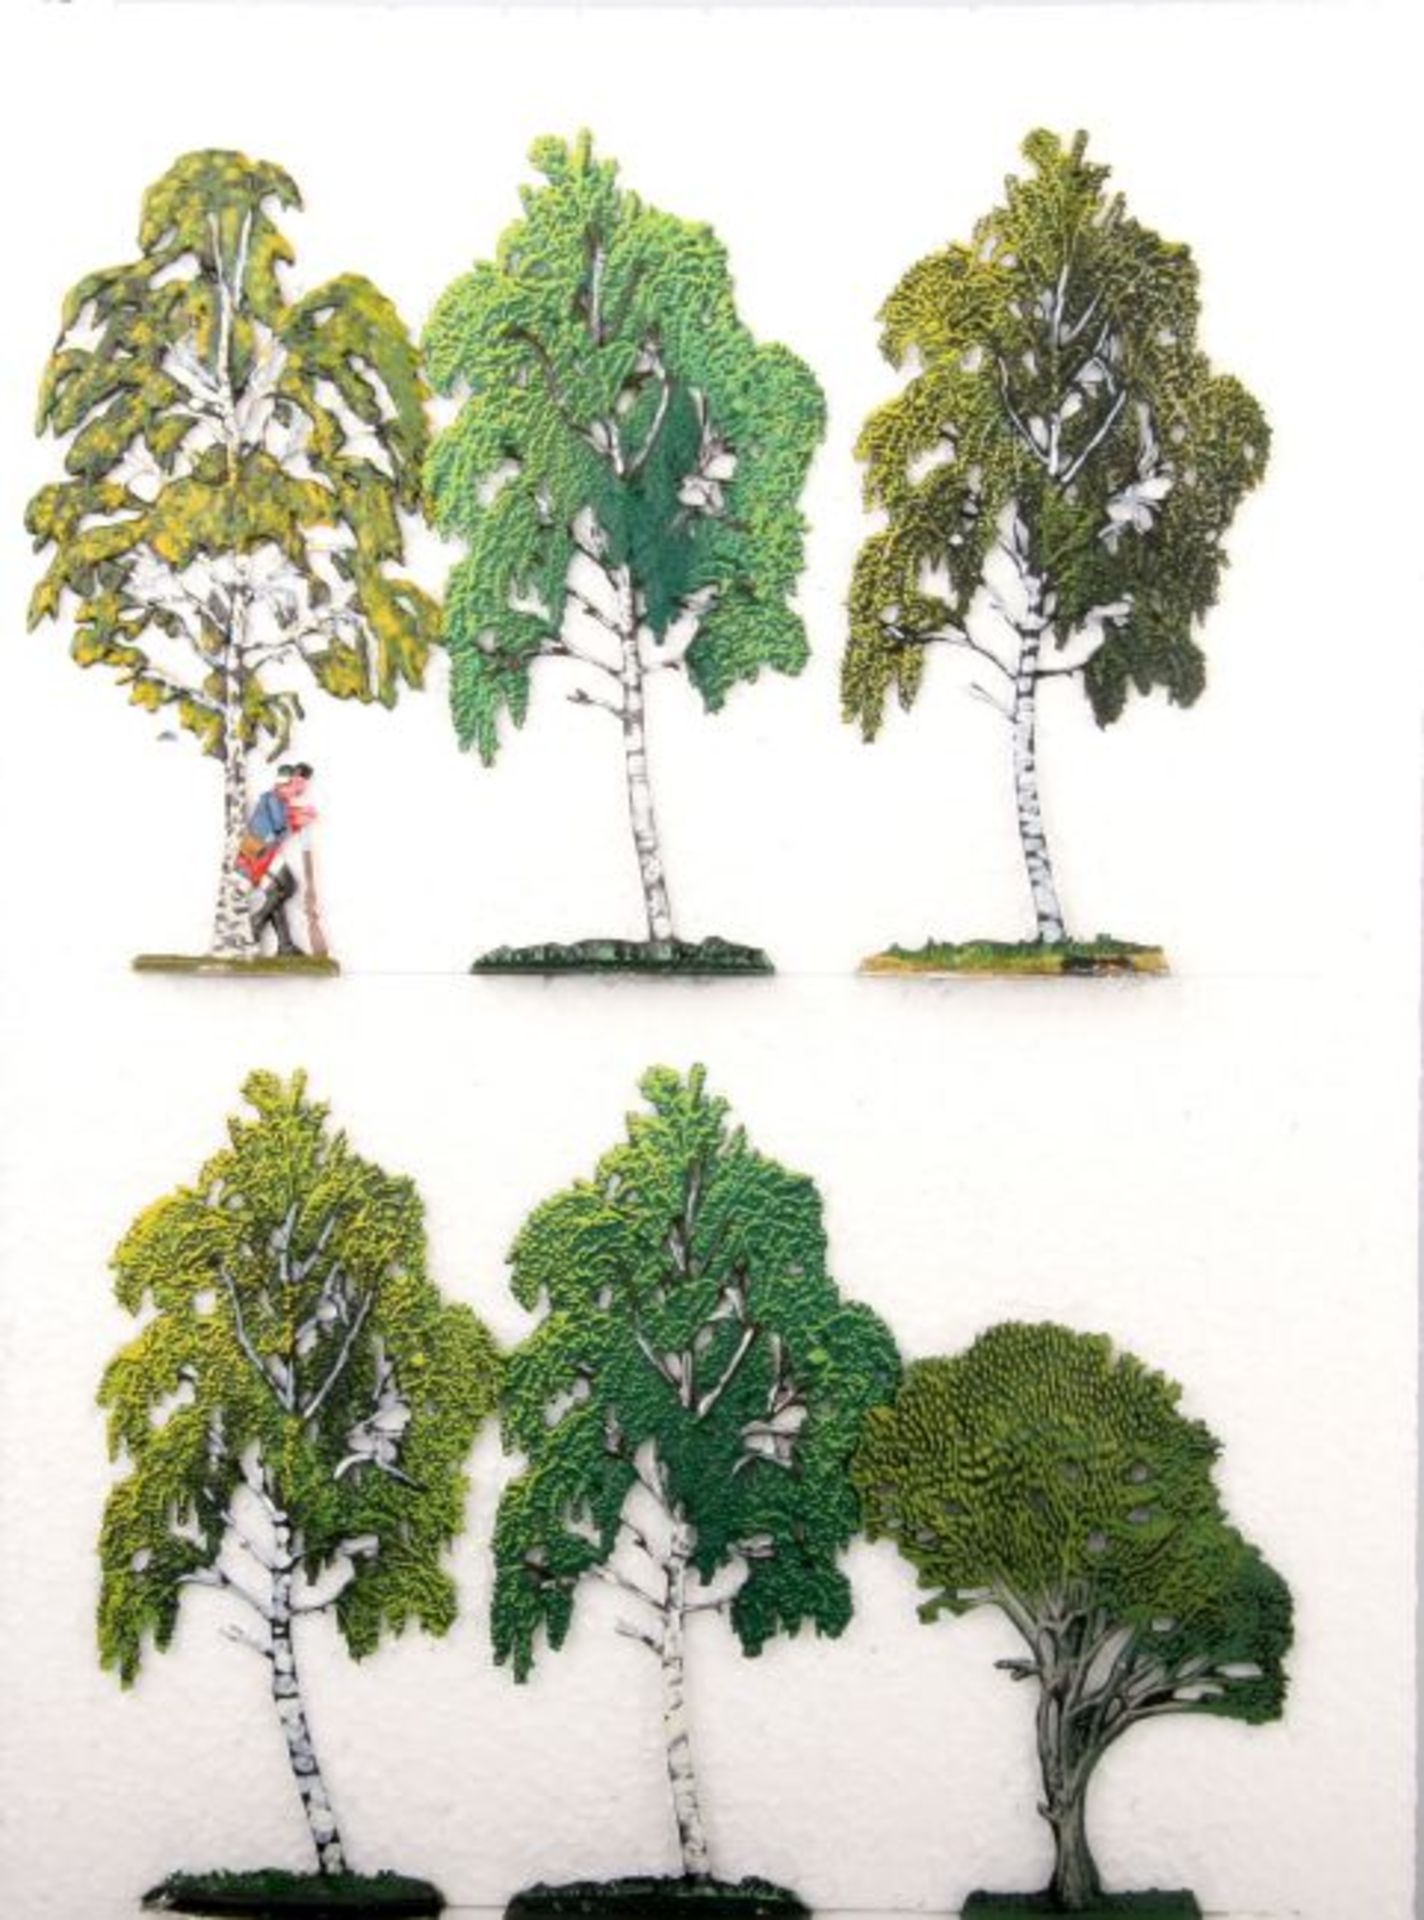 6 Laubbäume Sommer, meist Birken, bei einer preußischer Musketier an Stamm gelehnt, Höhe ca. 9,5-